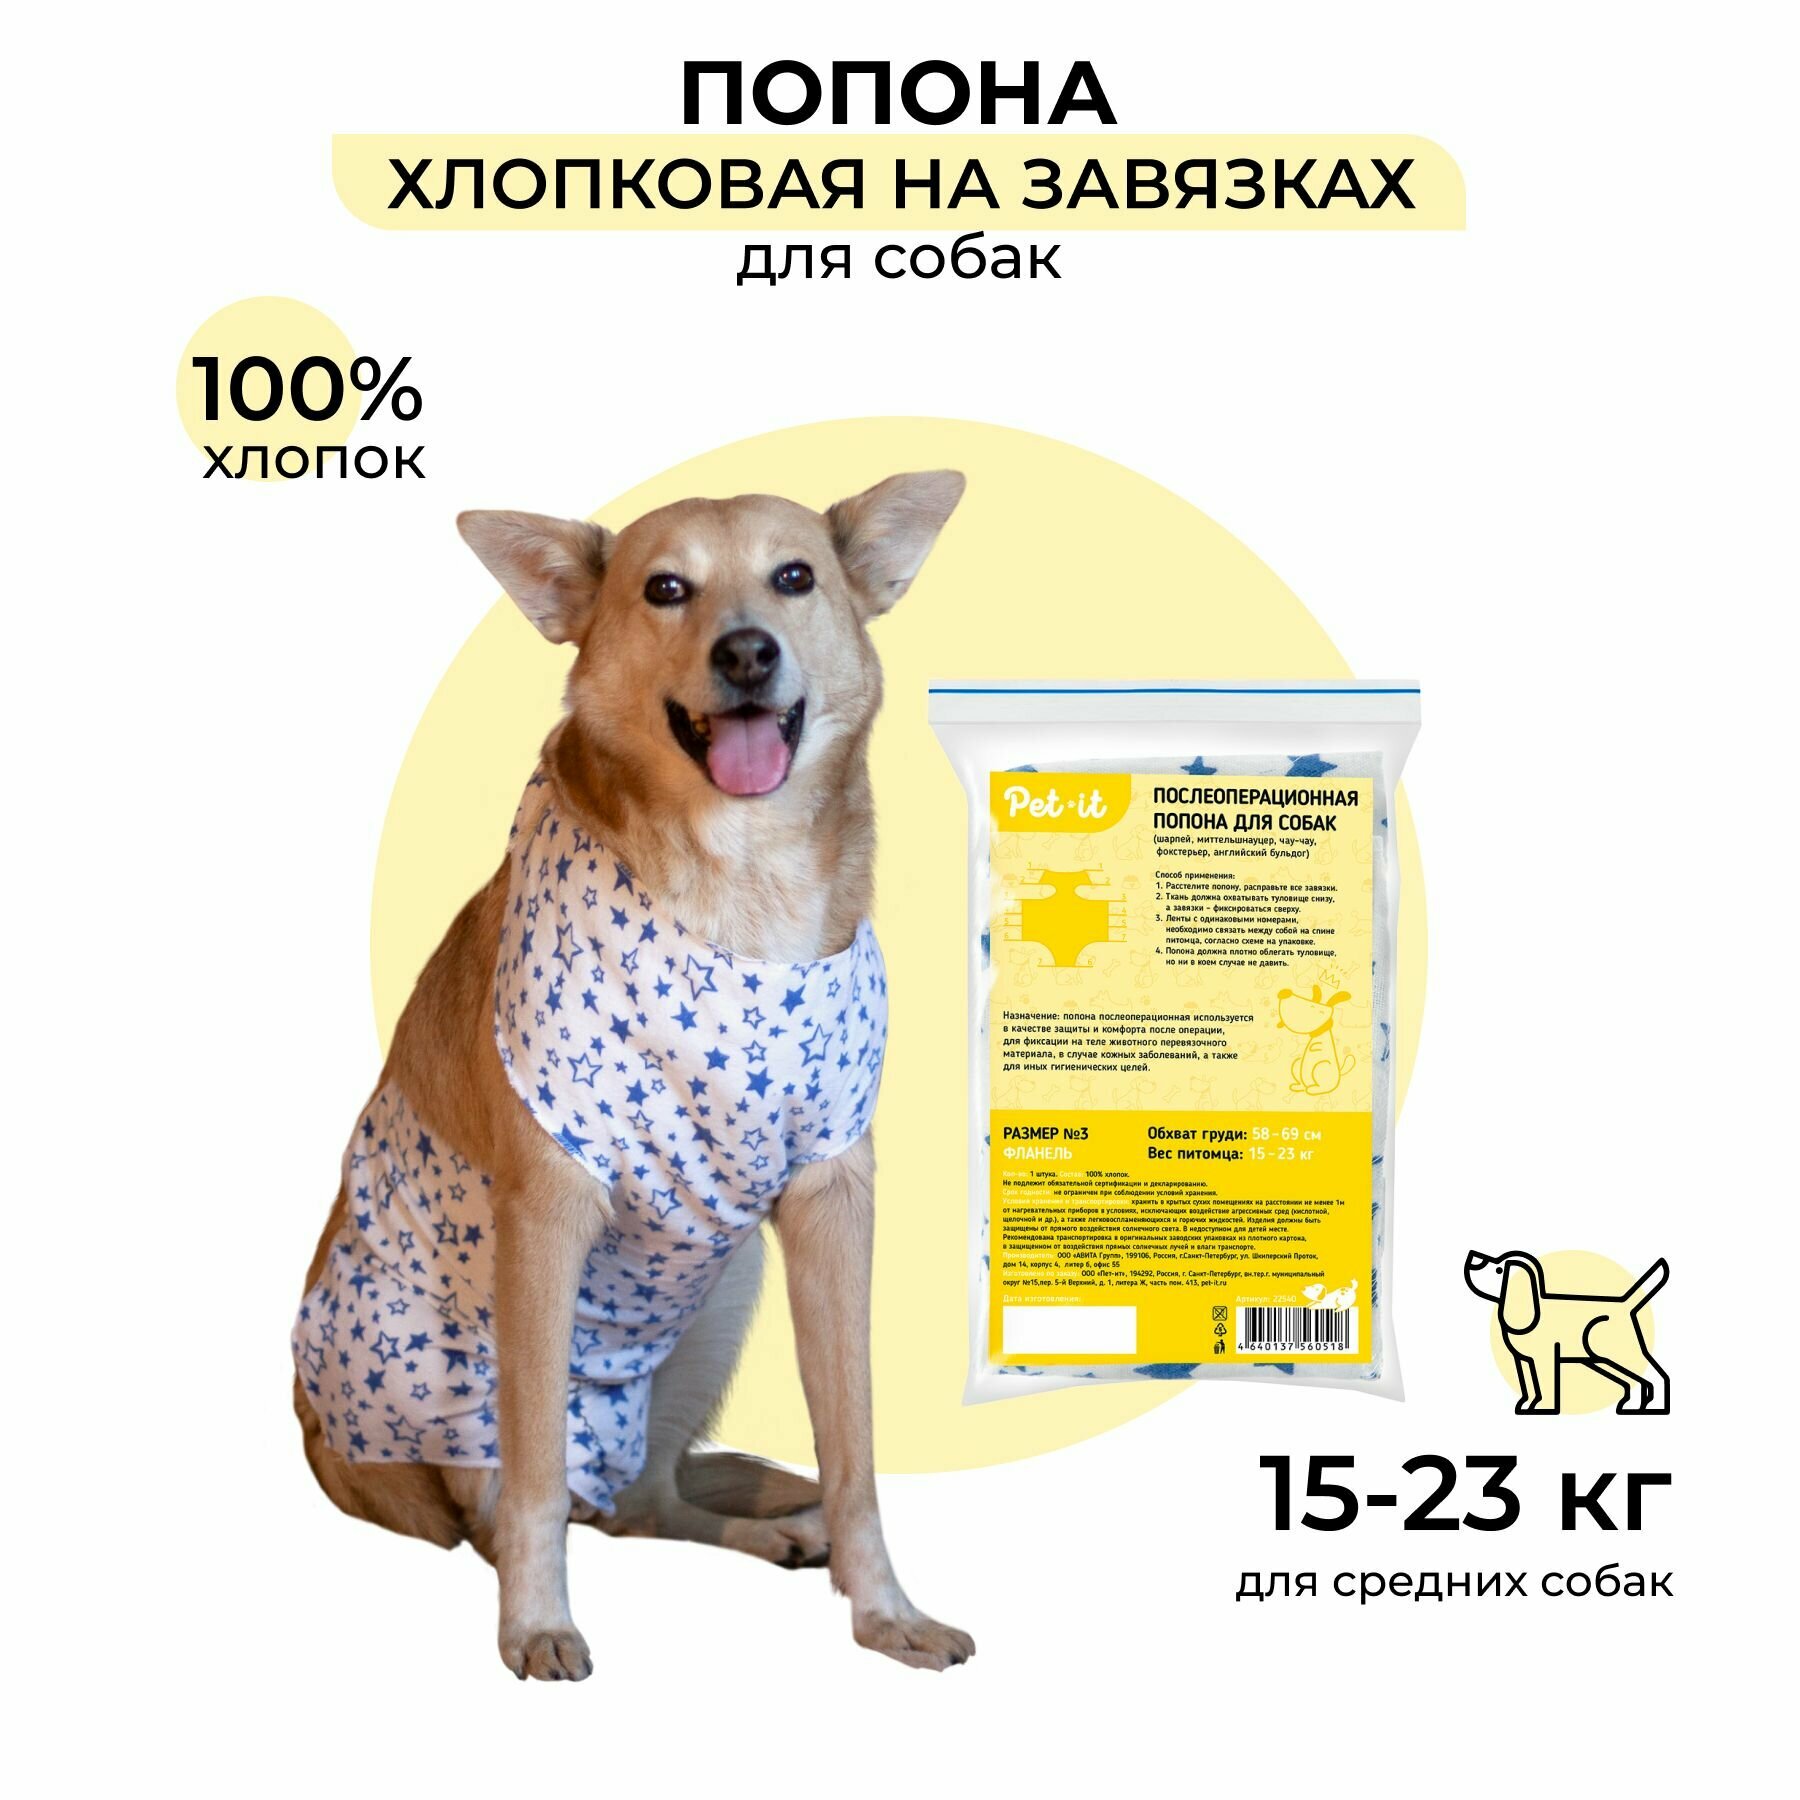 Pet-it попона послеоперационная для собак, бандаж после операции и стерилизации с завязками №3 (58-69 см, 15-23 кг), фланель